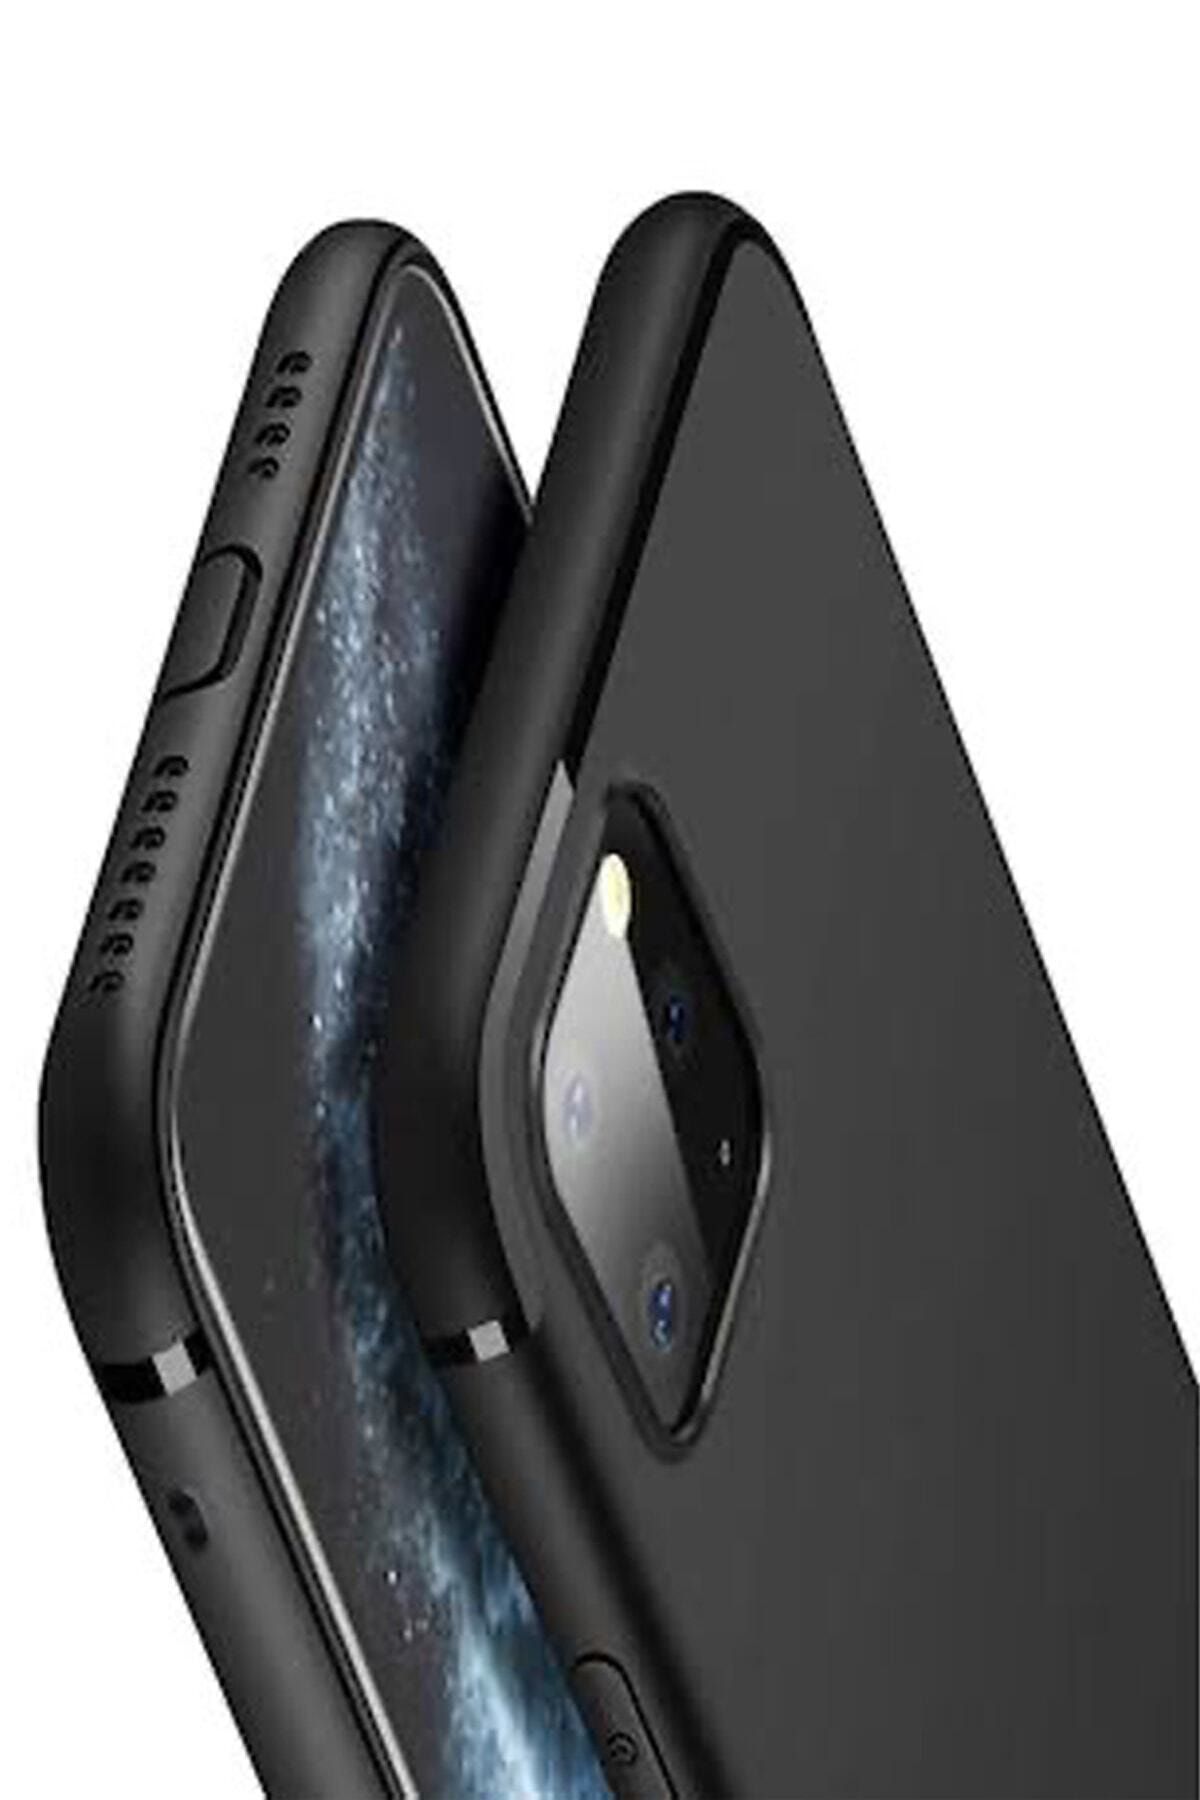 CEPSTOK Iphone 11 Kılıf Ultra Ince Tıpalı Siyah Silikon APPLE11T-CSKT